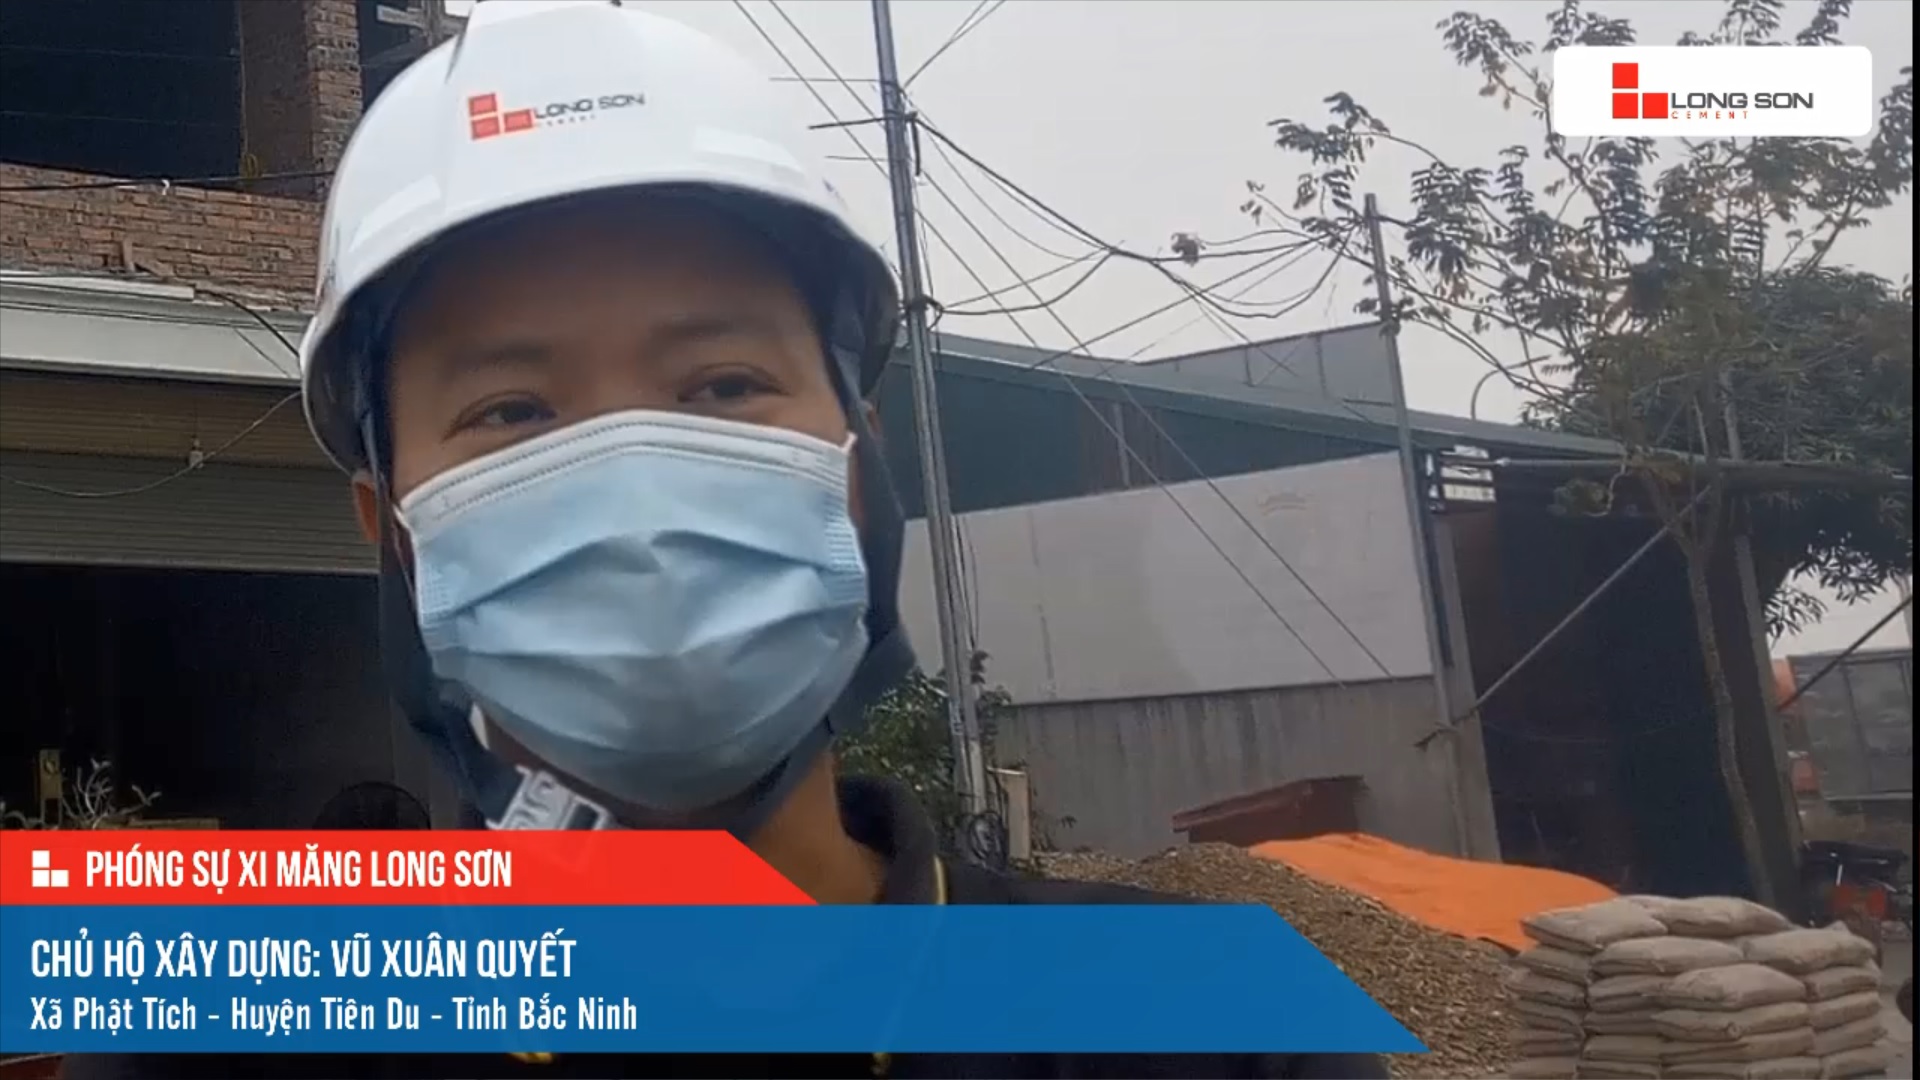 Phóng sự công trình sử dụng xi măng Long Sơn tại Bắc Ninh ngày 19/12/2021